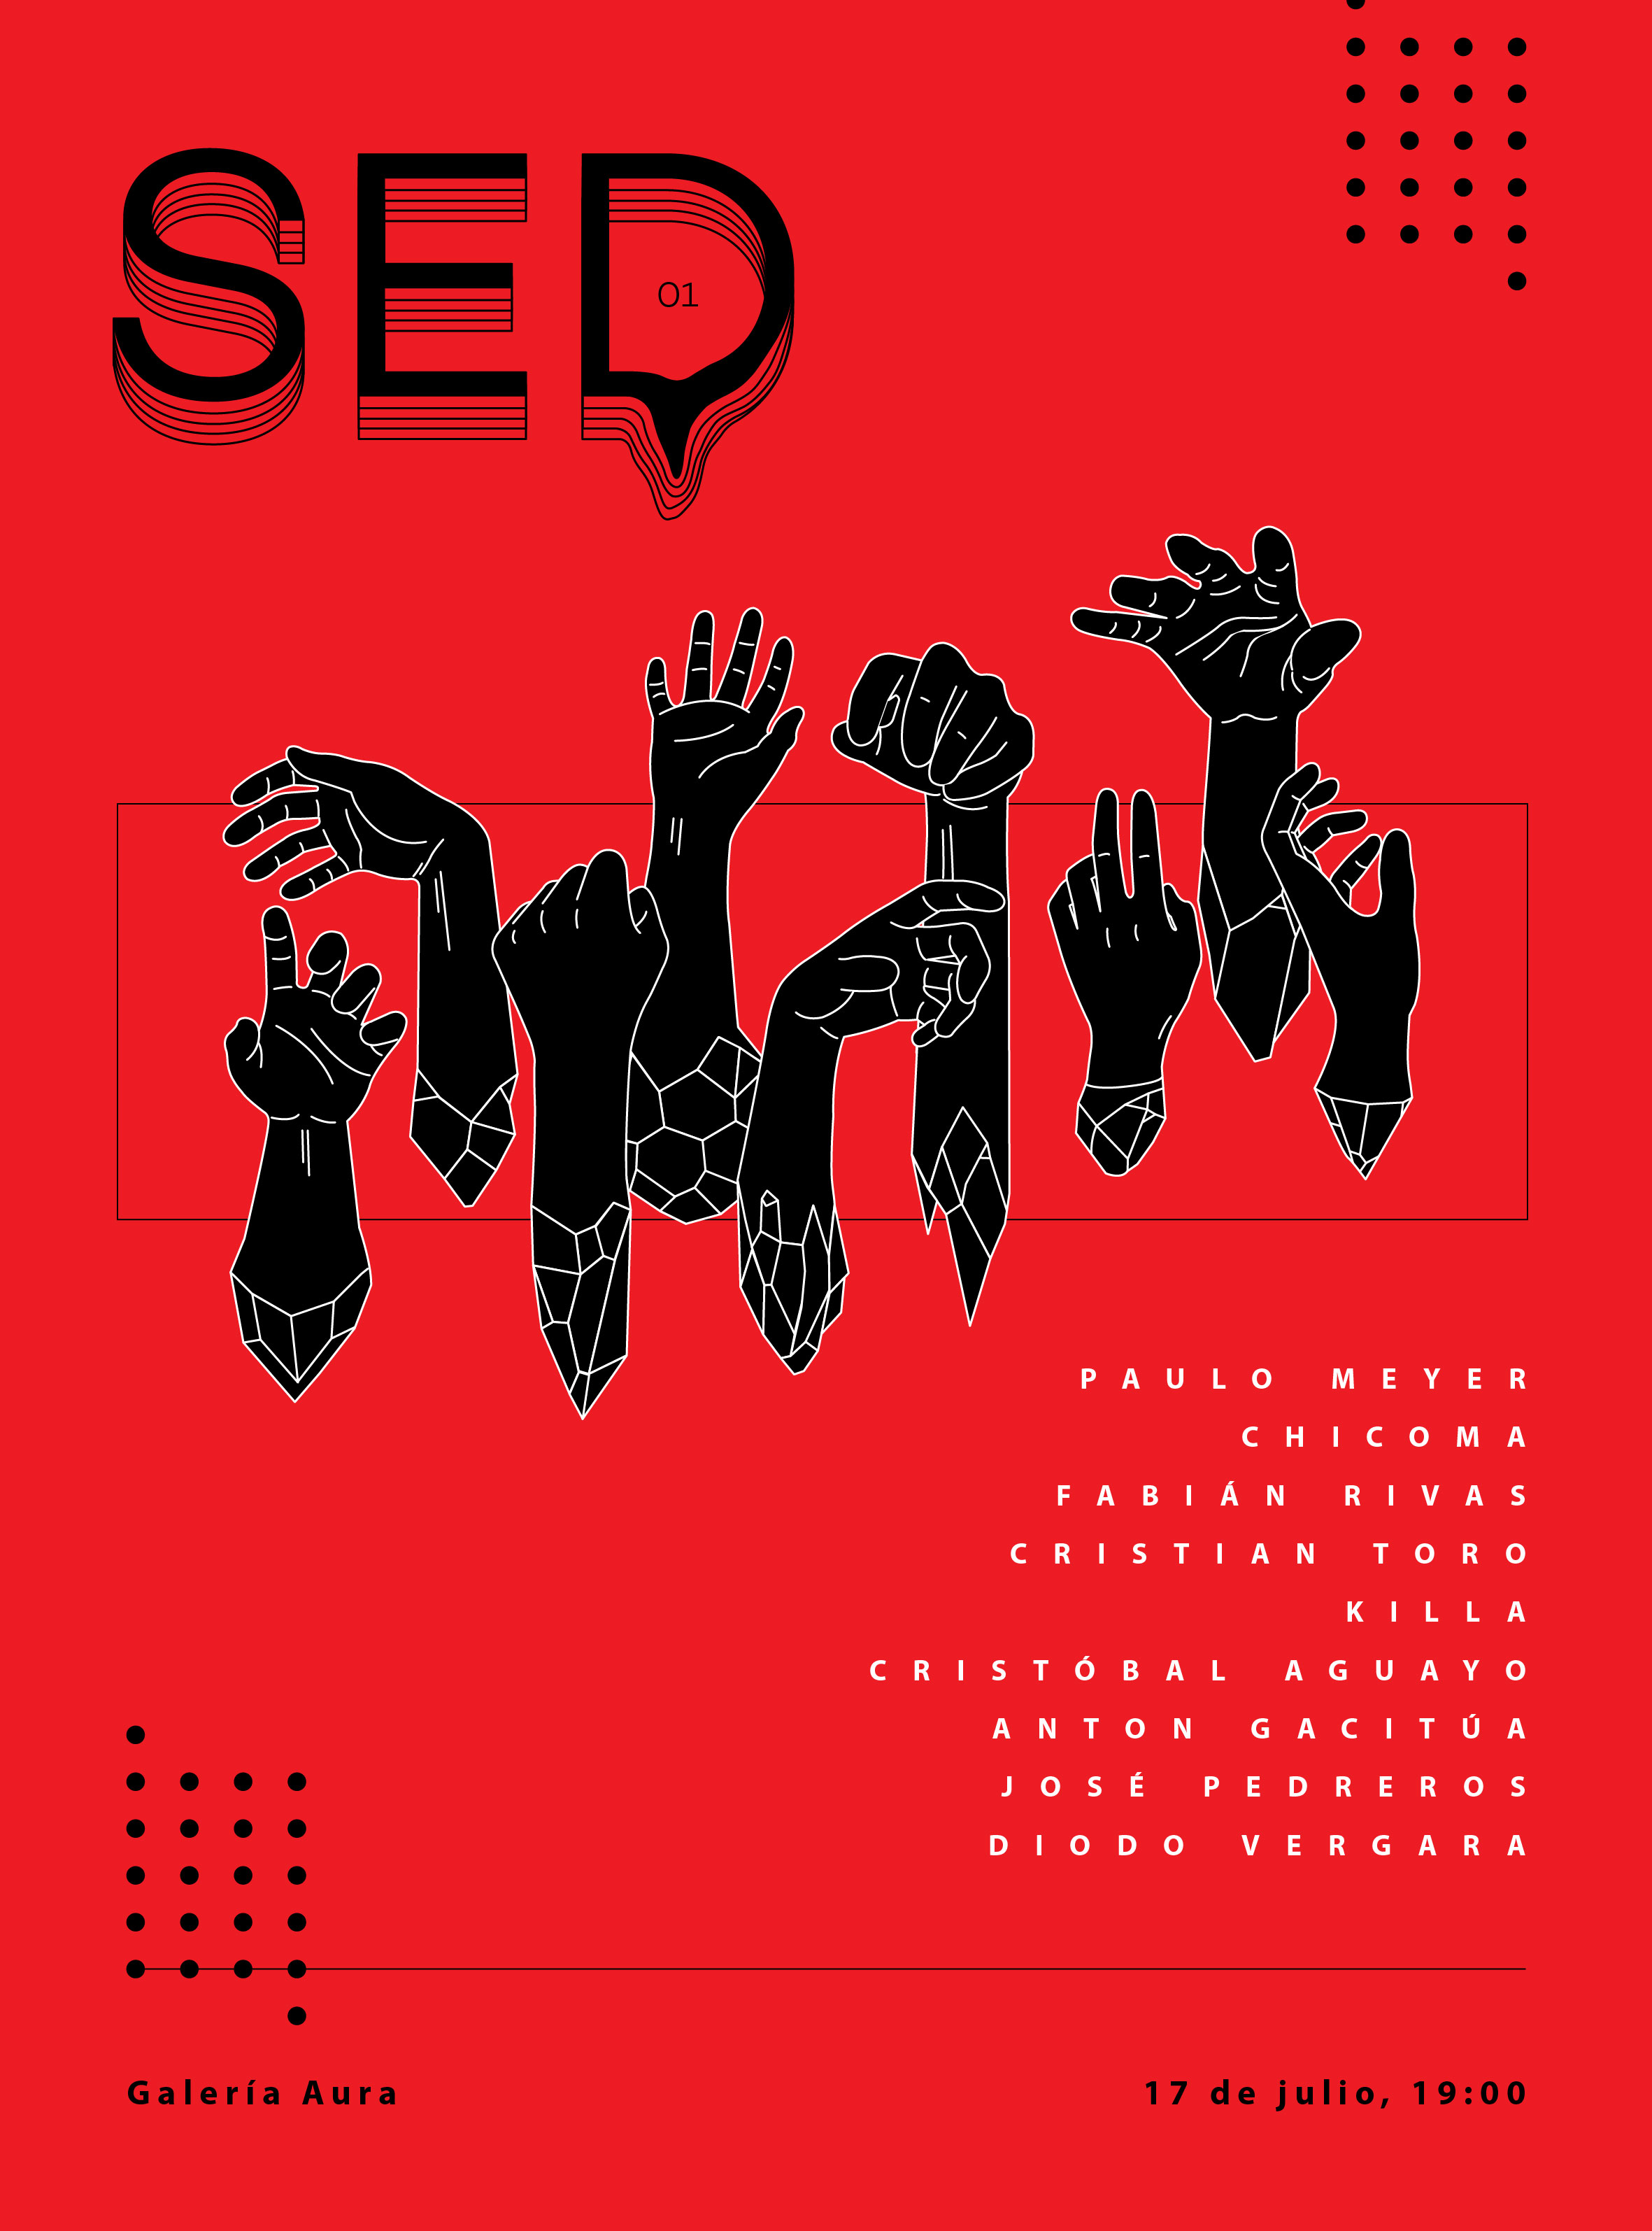 El afiche de la exposición "Sed".